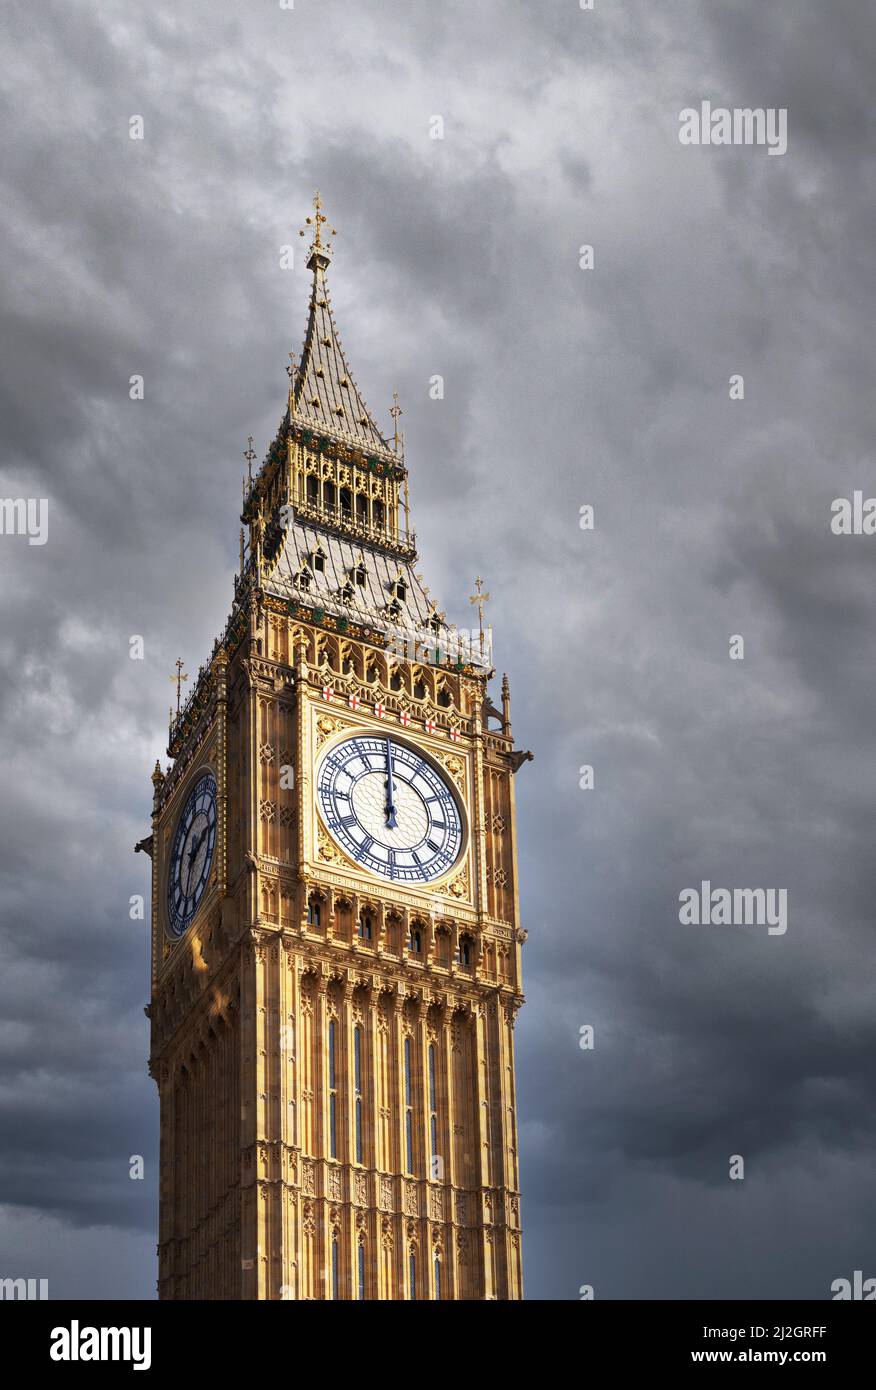 Sturmwolken über Big Ben, Elizabeth Tower und den Houses of Parliament - Konzept der britischen Regierung Probleme und Probleme, Parlament London Großbritannien Stockfoto